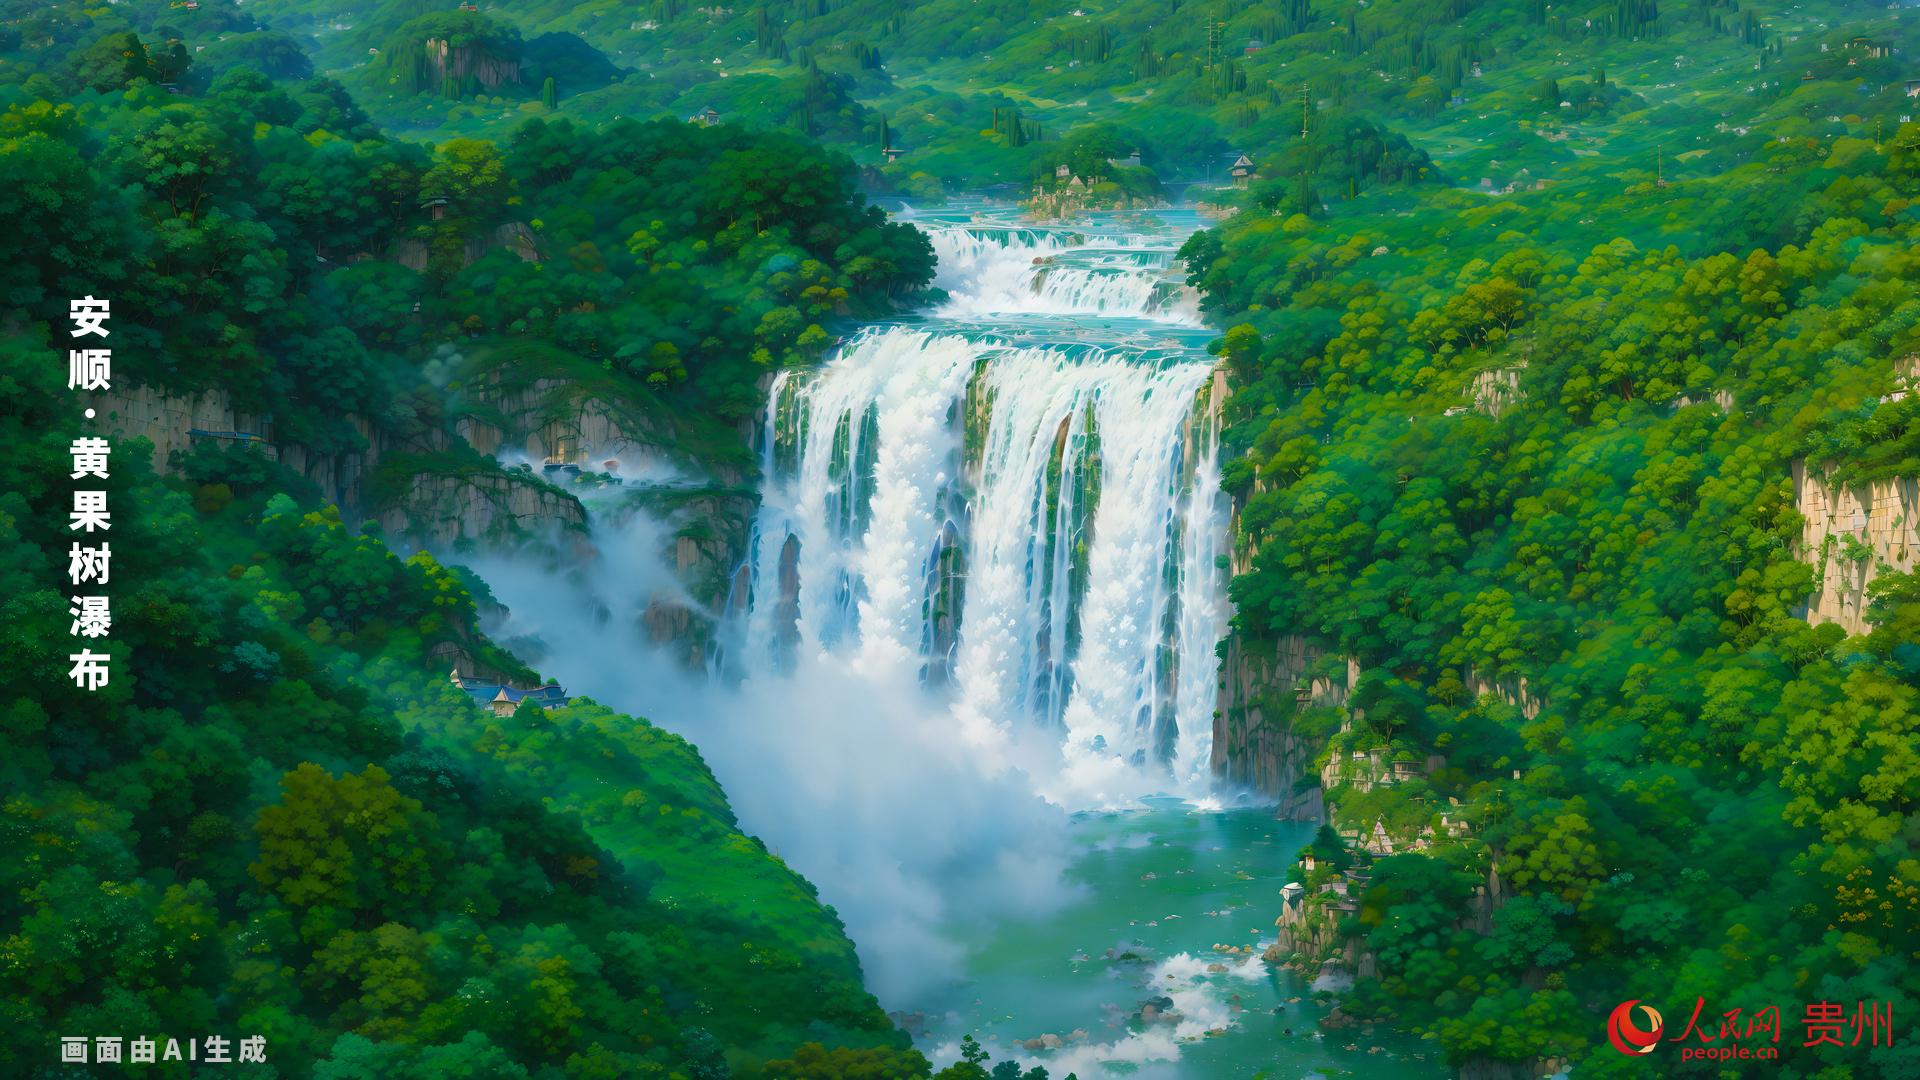 位于中国贵州省安顺市，是世界著名大瀑布之一，以水势浩大著称。